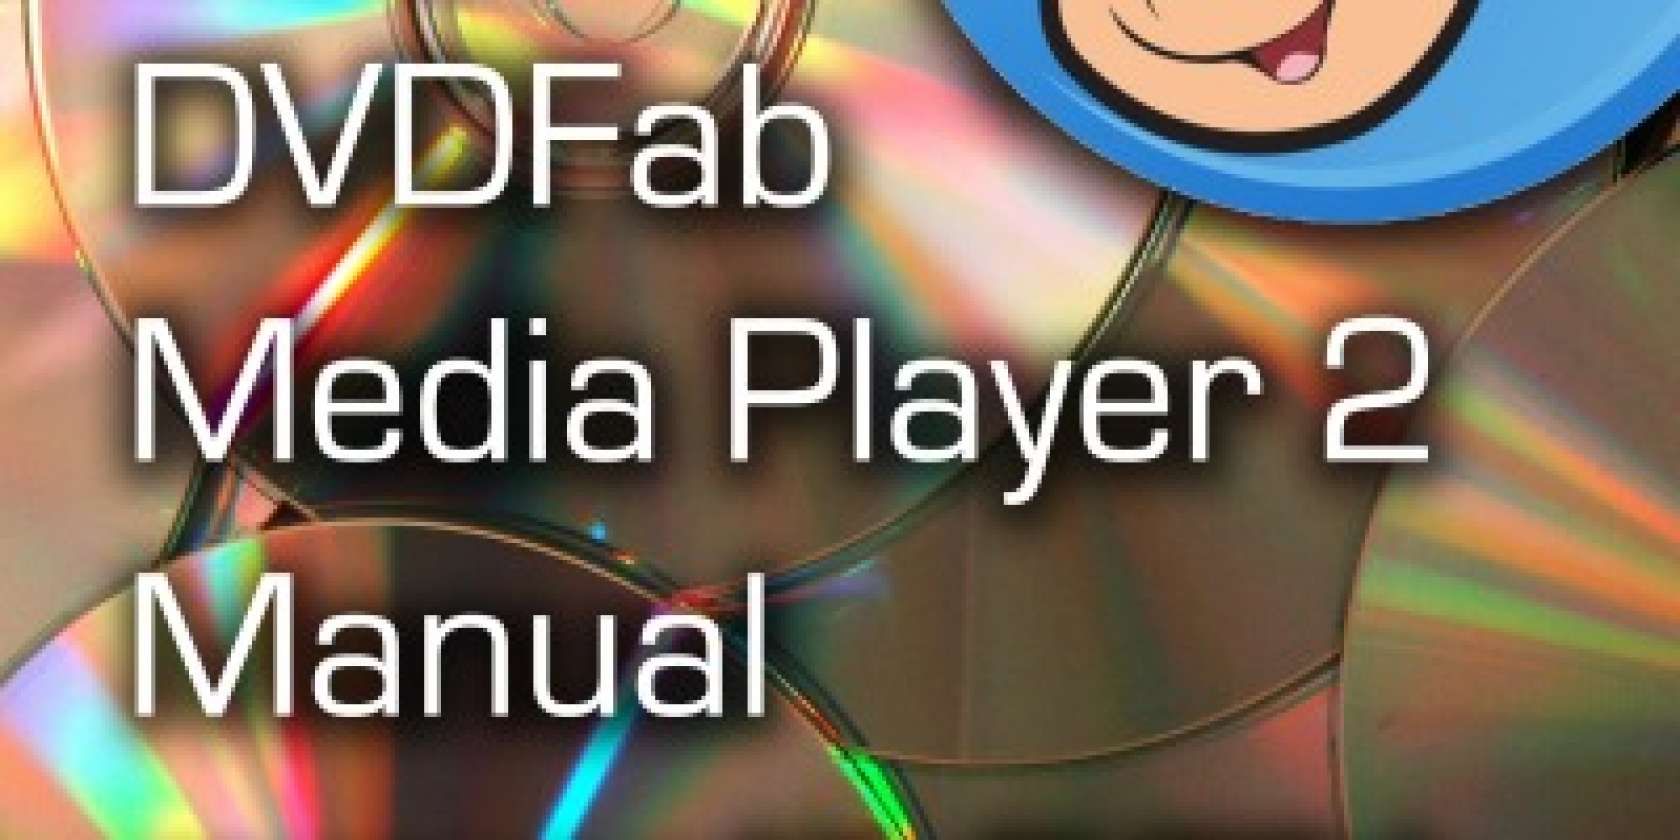 dvdfab media player 2 featured banner